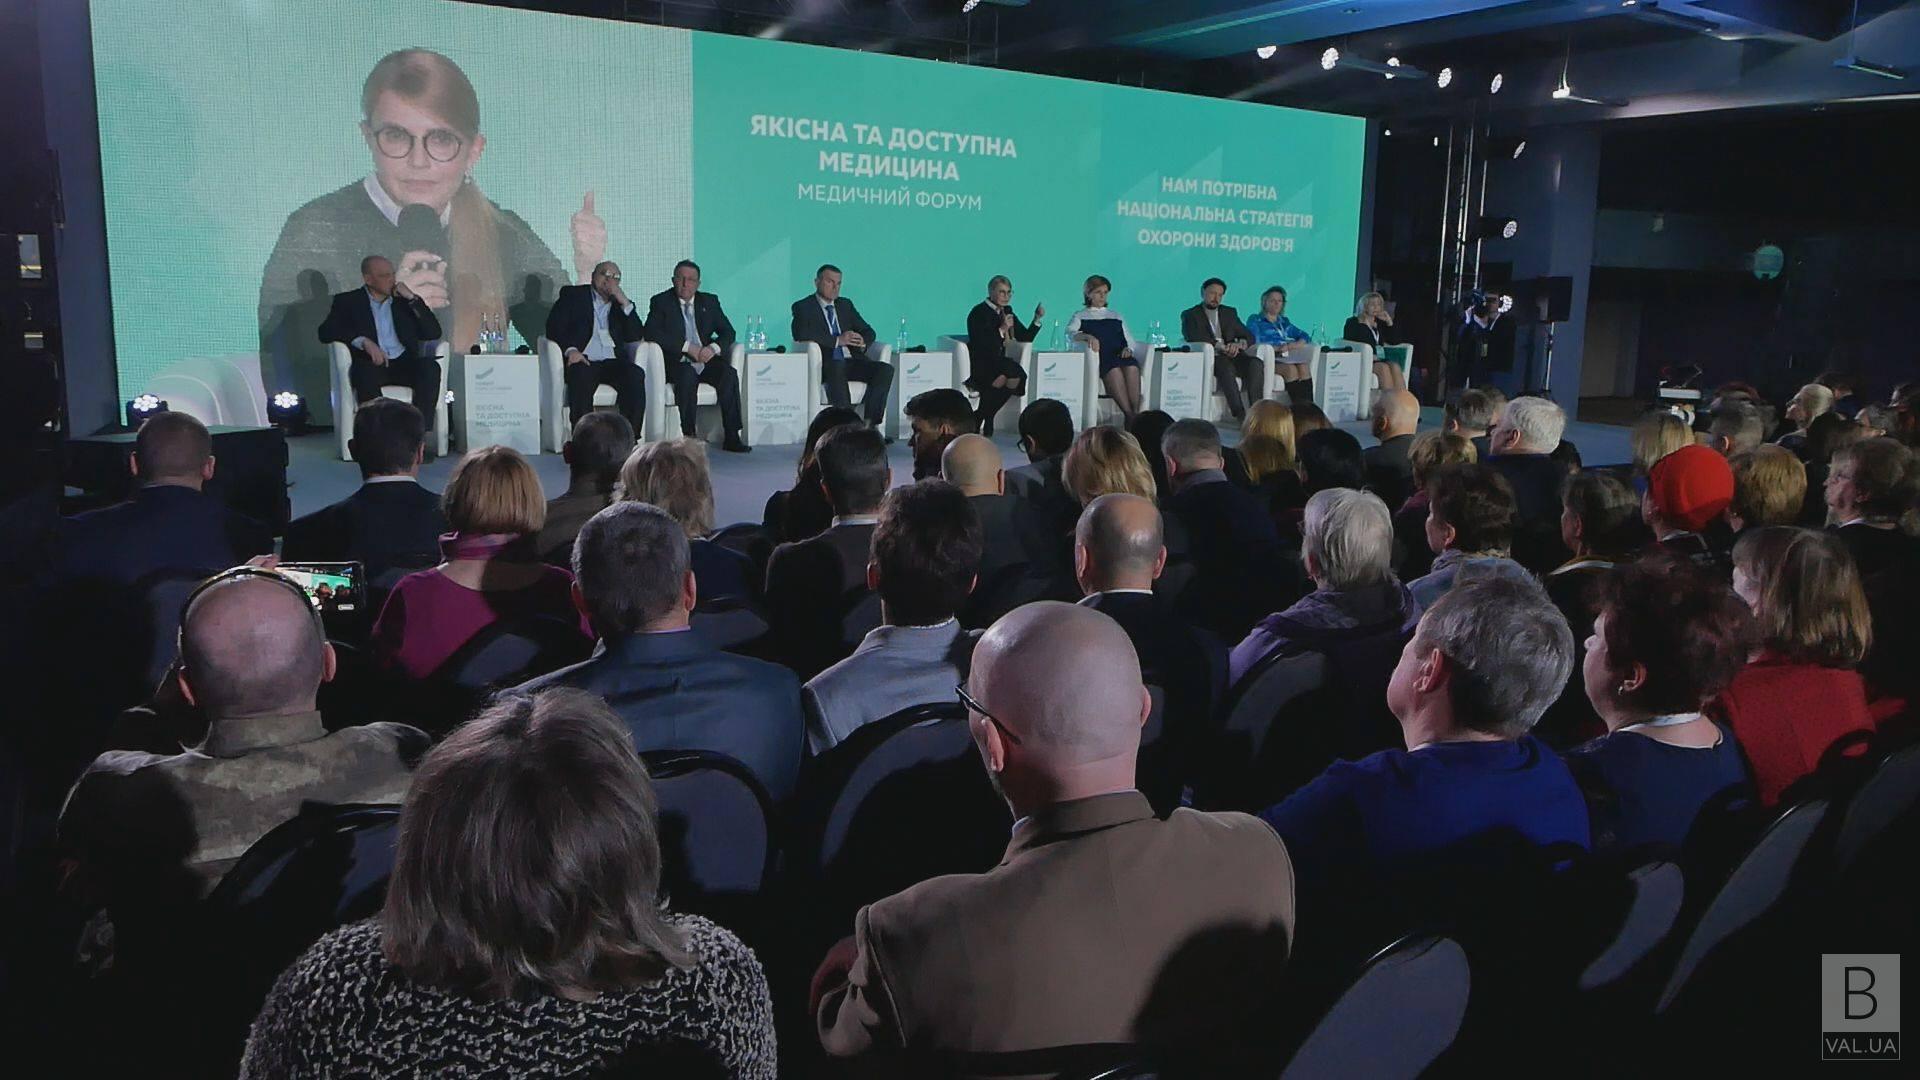 Будущее украинской медицины обсуждали на национальном форуме «Качественная и доступная медицина» ВИДЕО